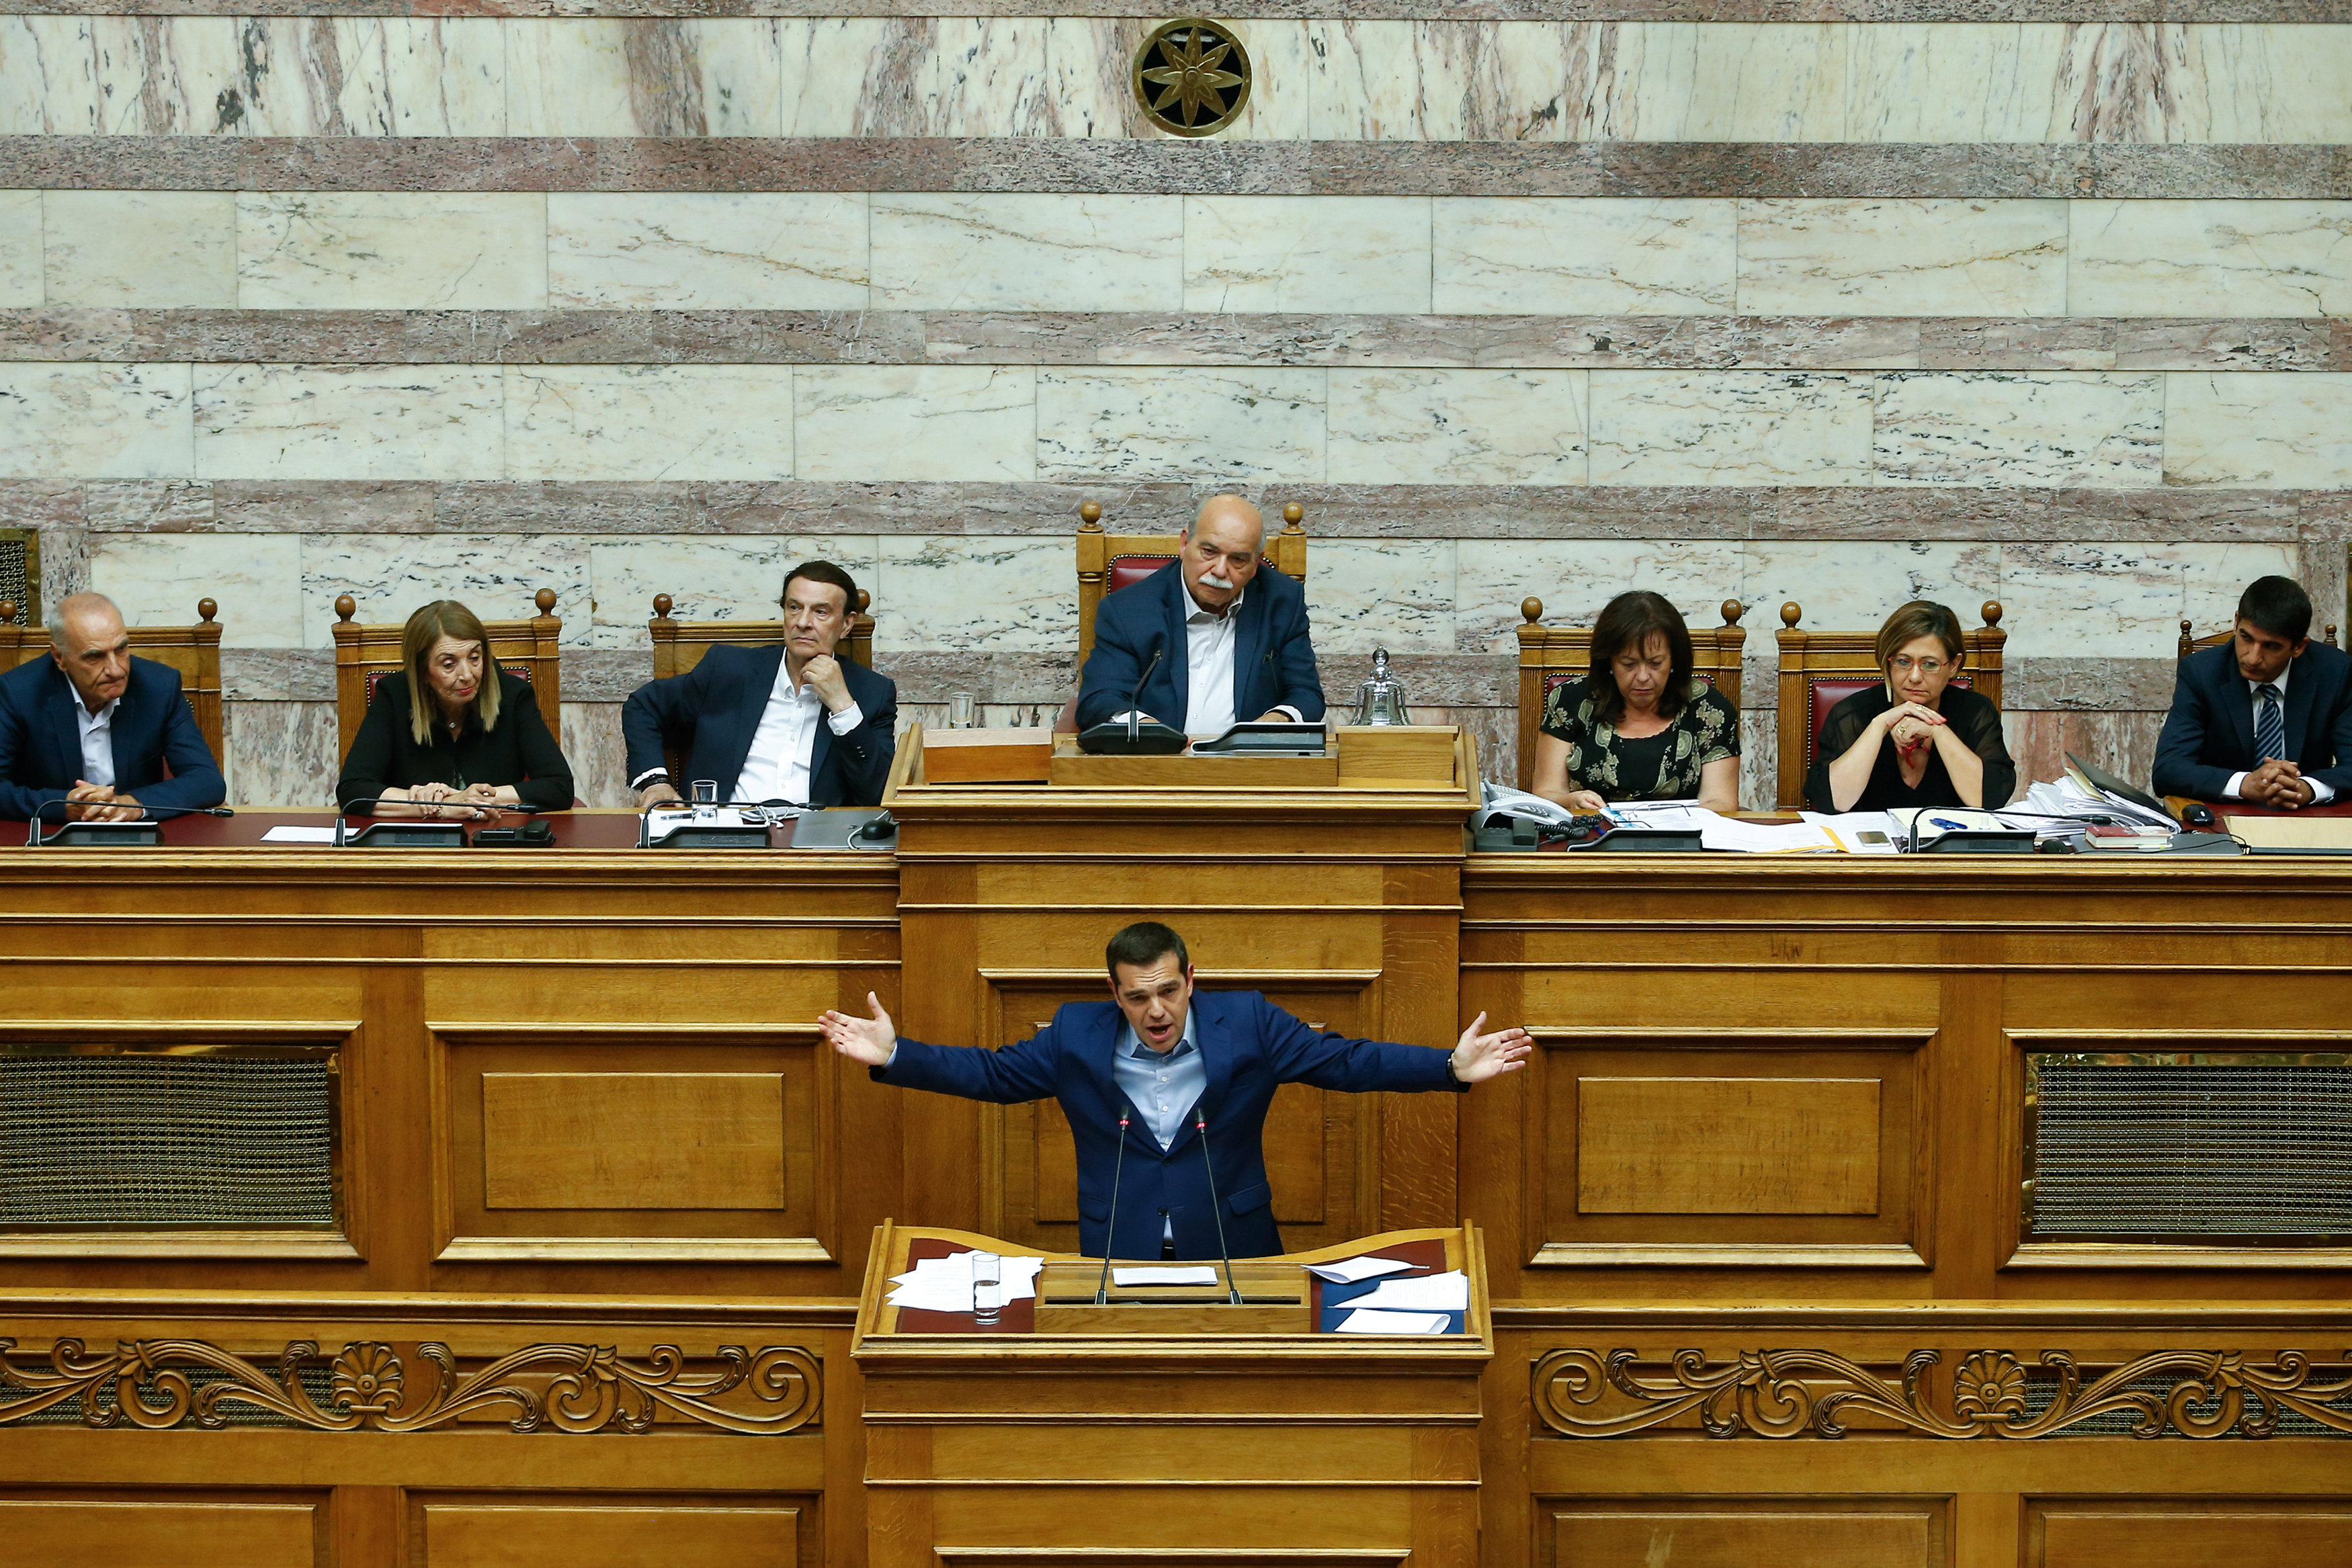 El primer ministro de Grecia acusó a la oposición de legitimar el nacionalismo extremo